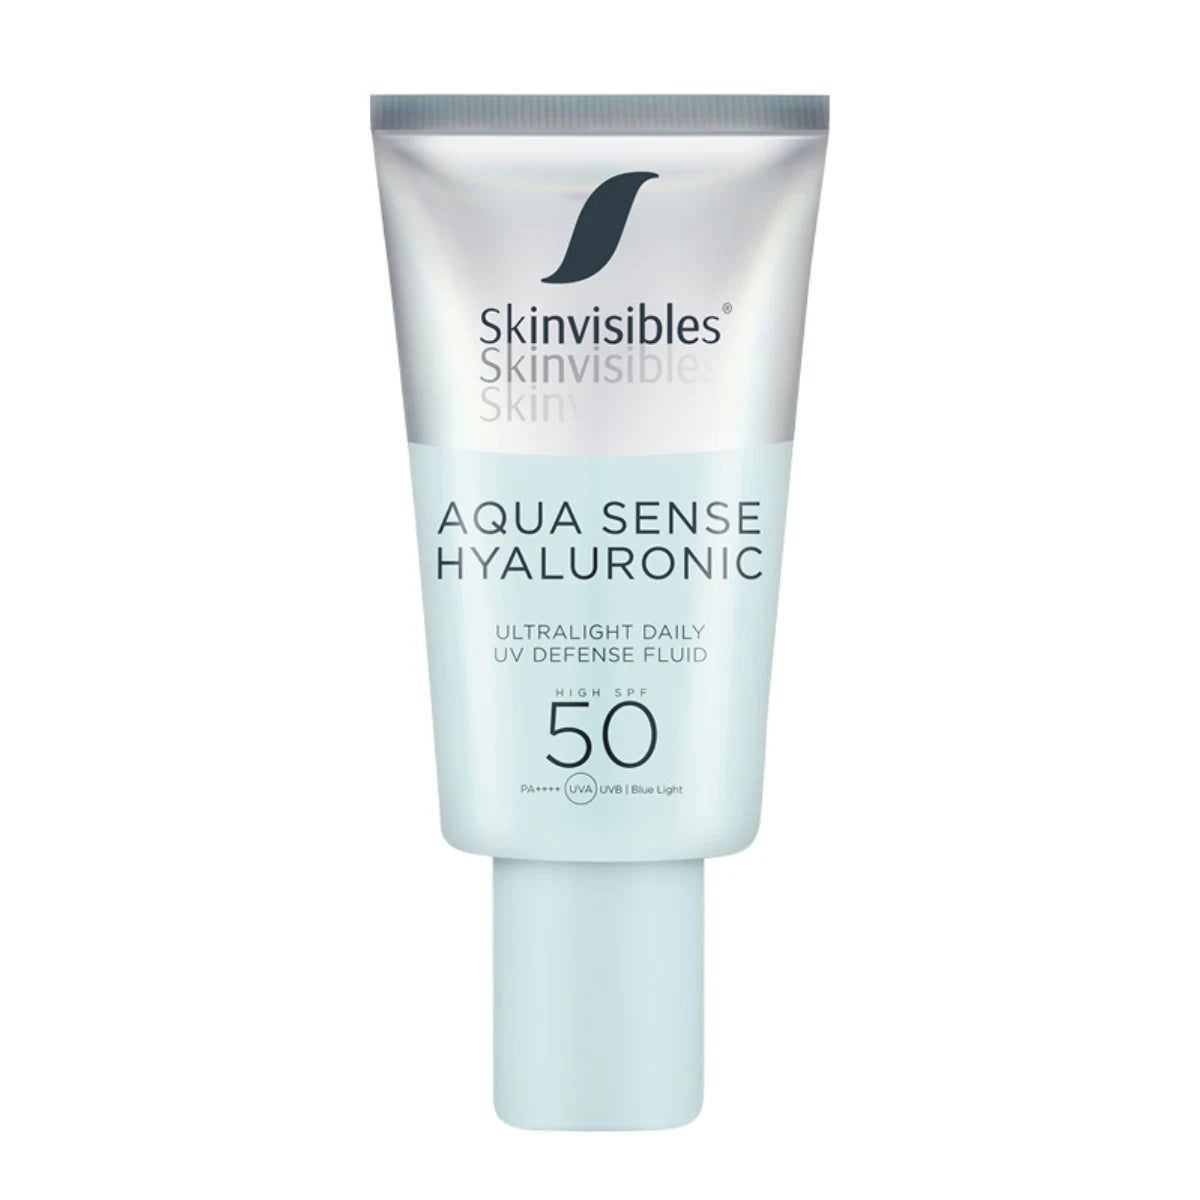 Skinvisibles Aqua Sense Hyaluronic SPF50 50 ml sisältää pienimolekyylistä hyaluronihappoa